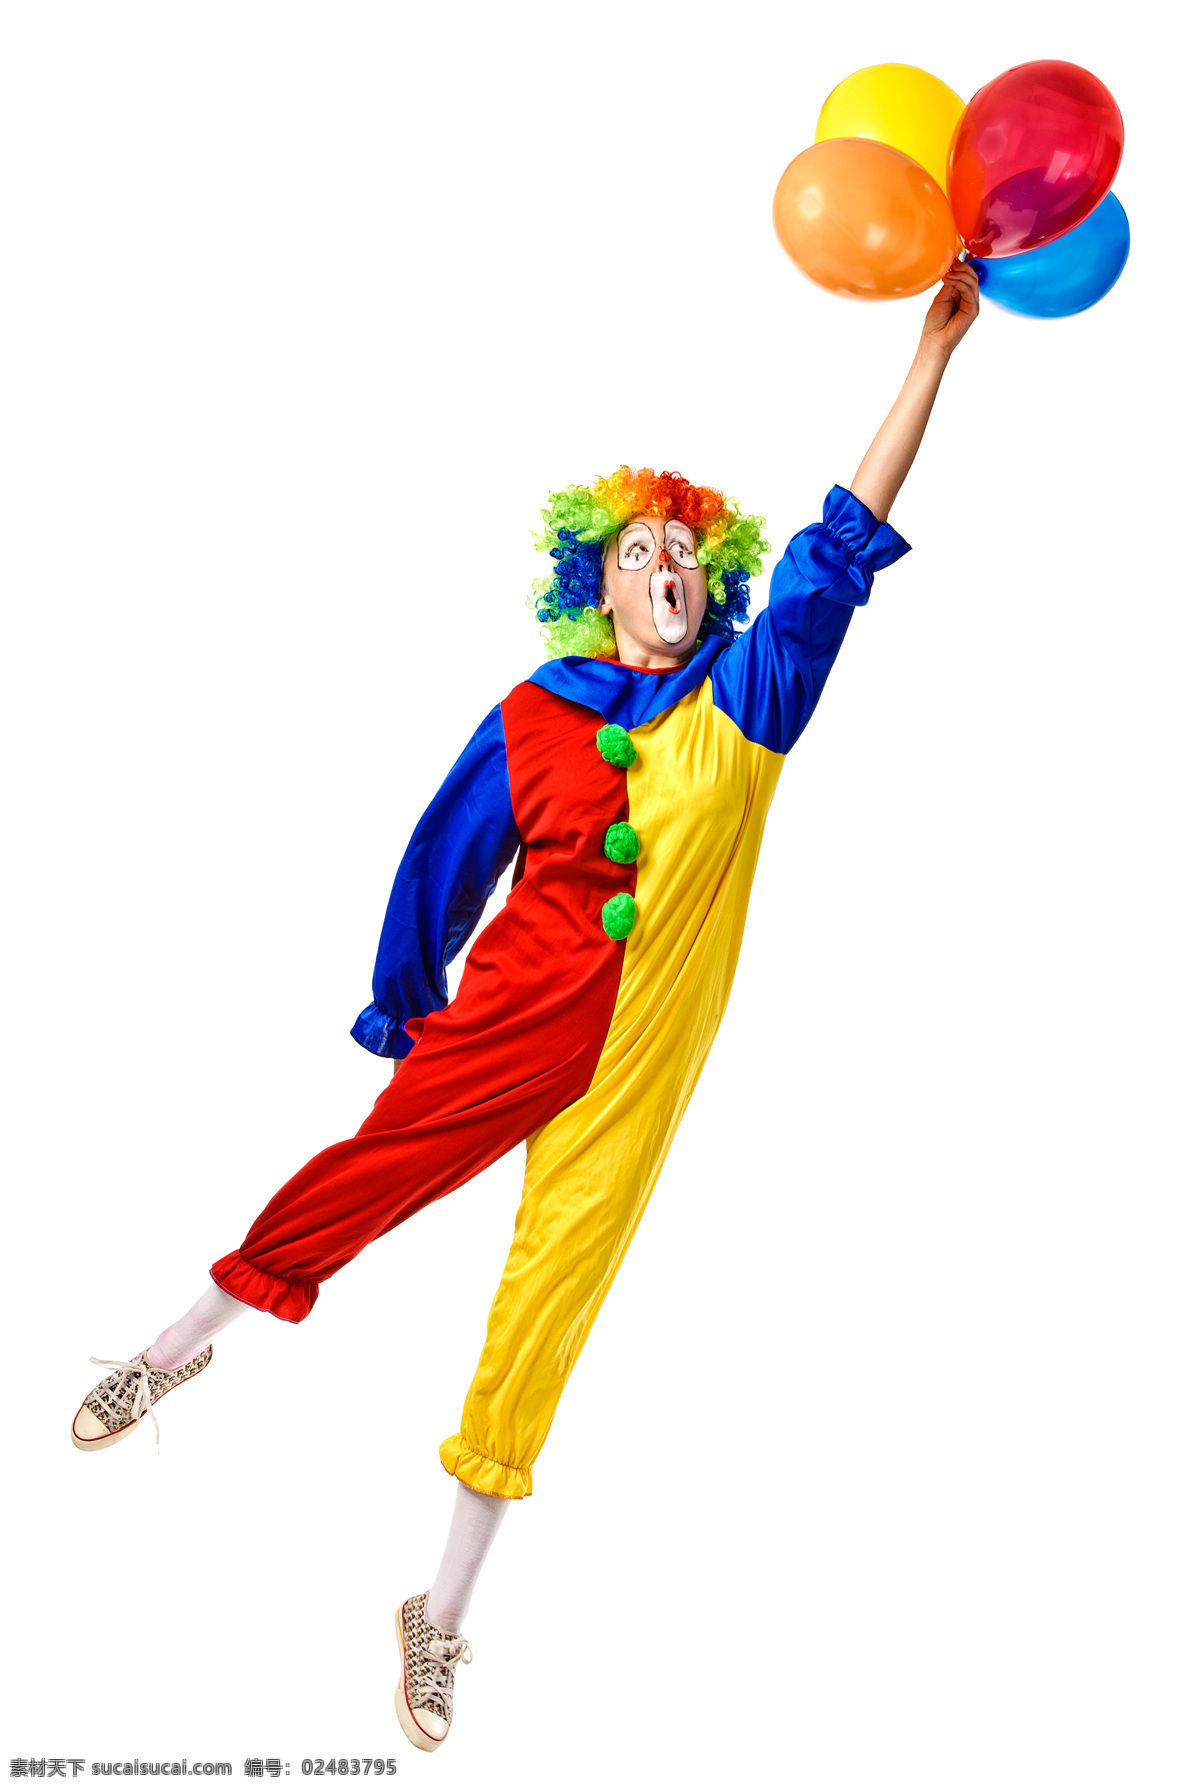 小丑 气球 可爱小丑 彩色气球 氢气球 四个气球 手拿气球人物 其他类别 生活百科